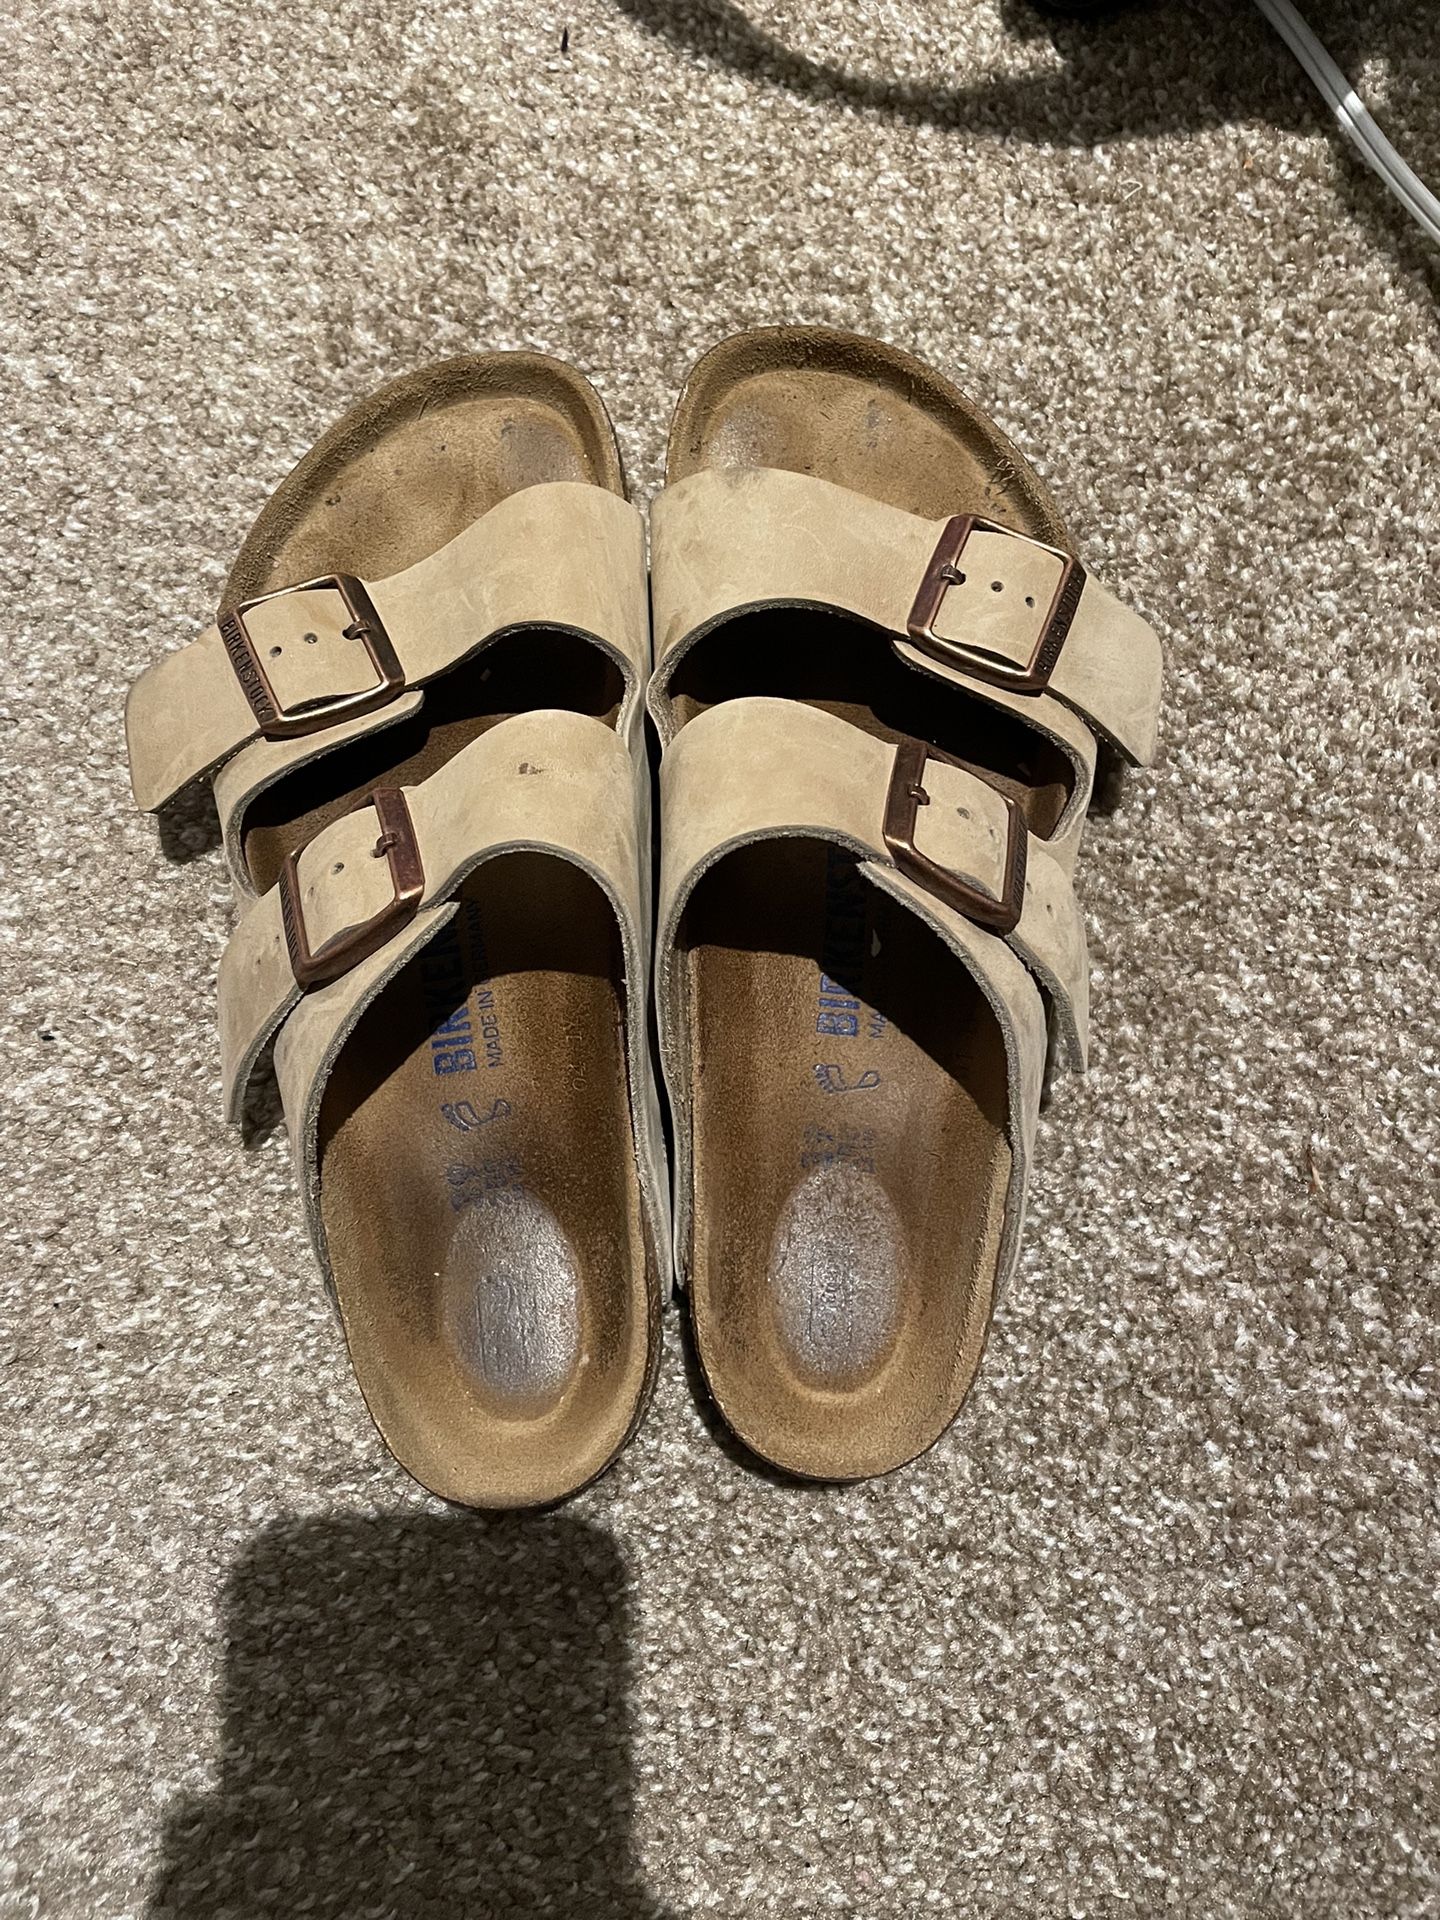 Birkenstock Sandals 